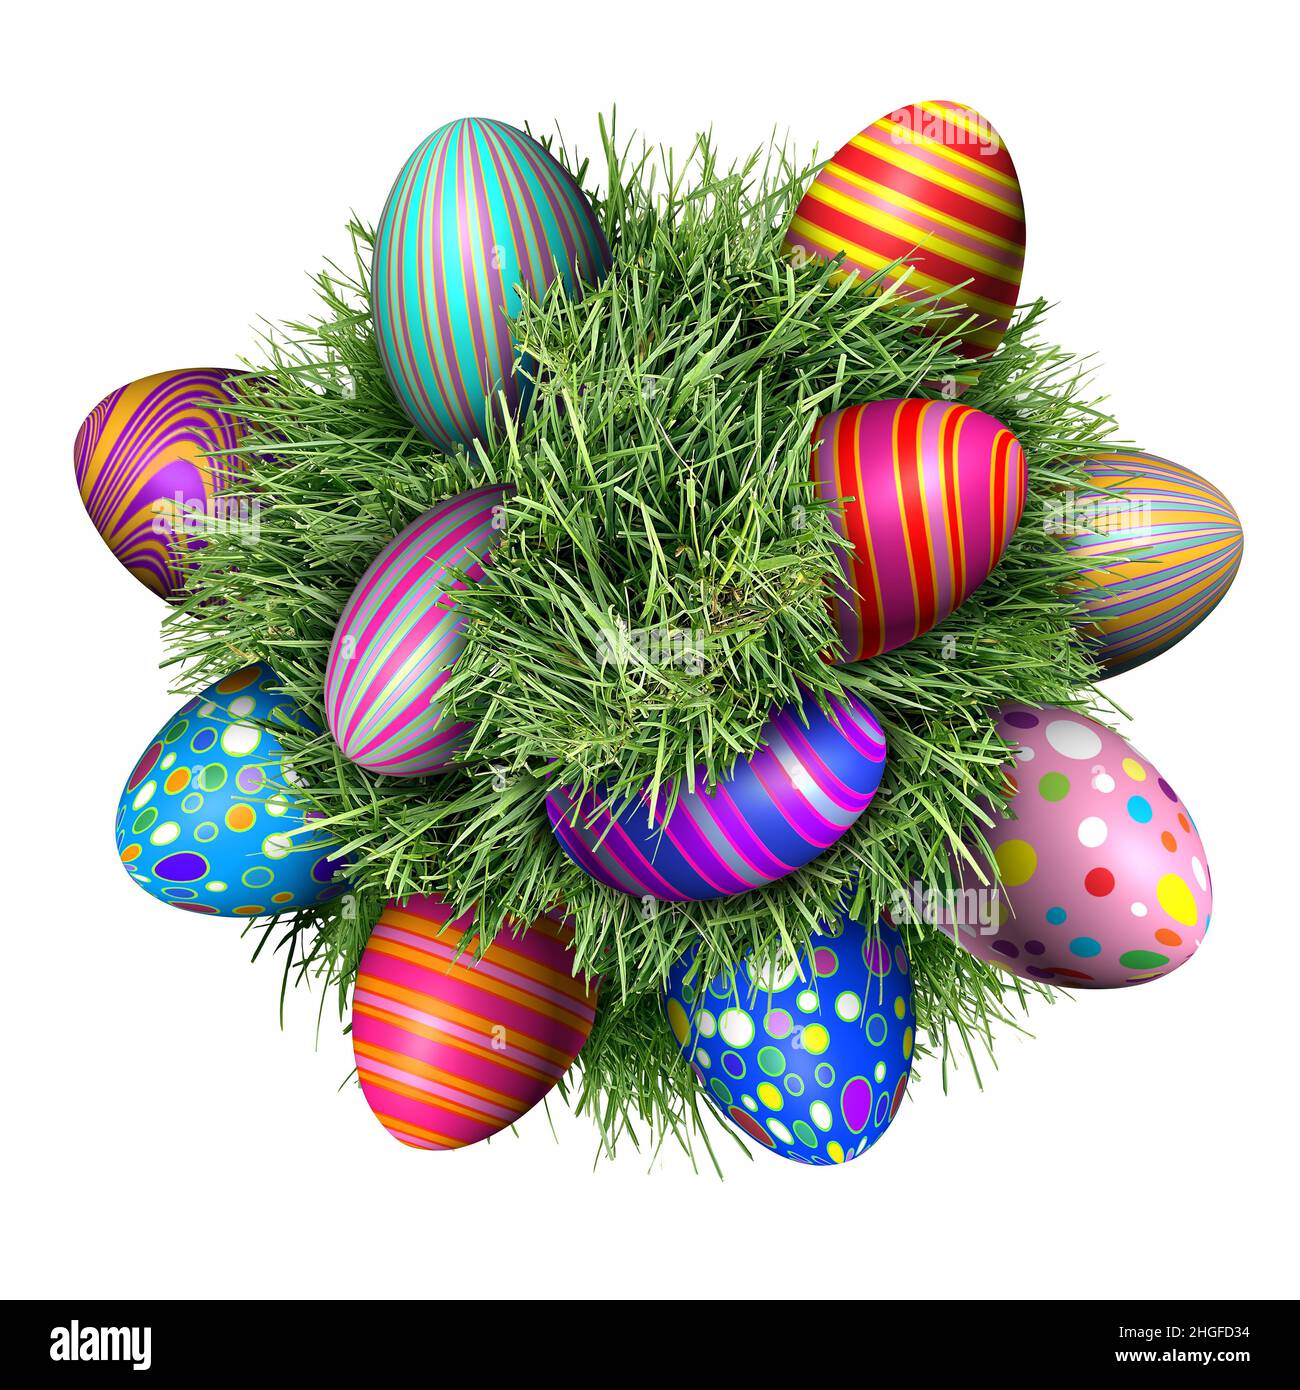 Búsqueda de huevos de Pascua con huevos decorados sentados en una bola de hierba verde como símbolo de la primavera y un elemento festivo de diseño y decoración de las vacaciones de abril. Foto de stock